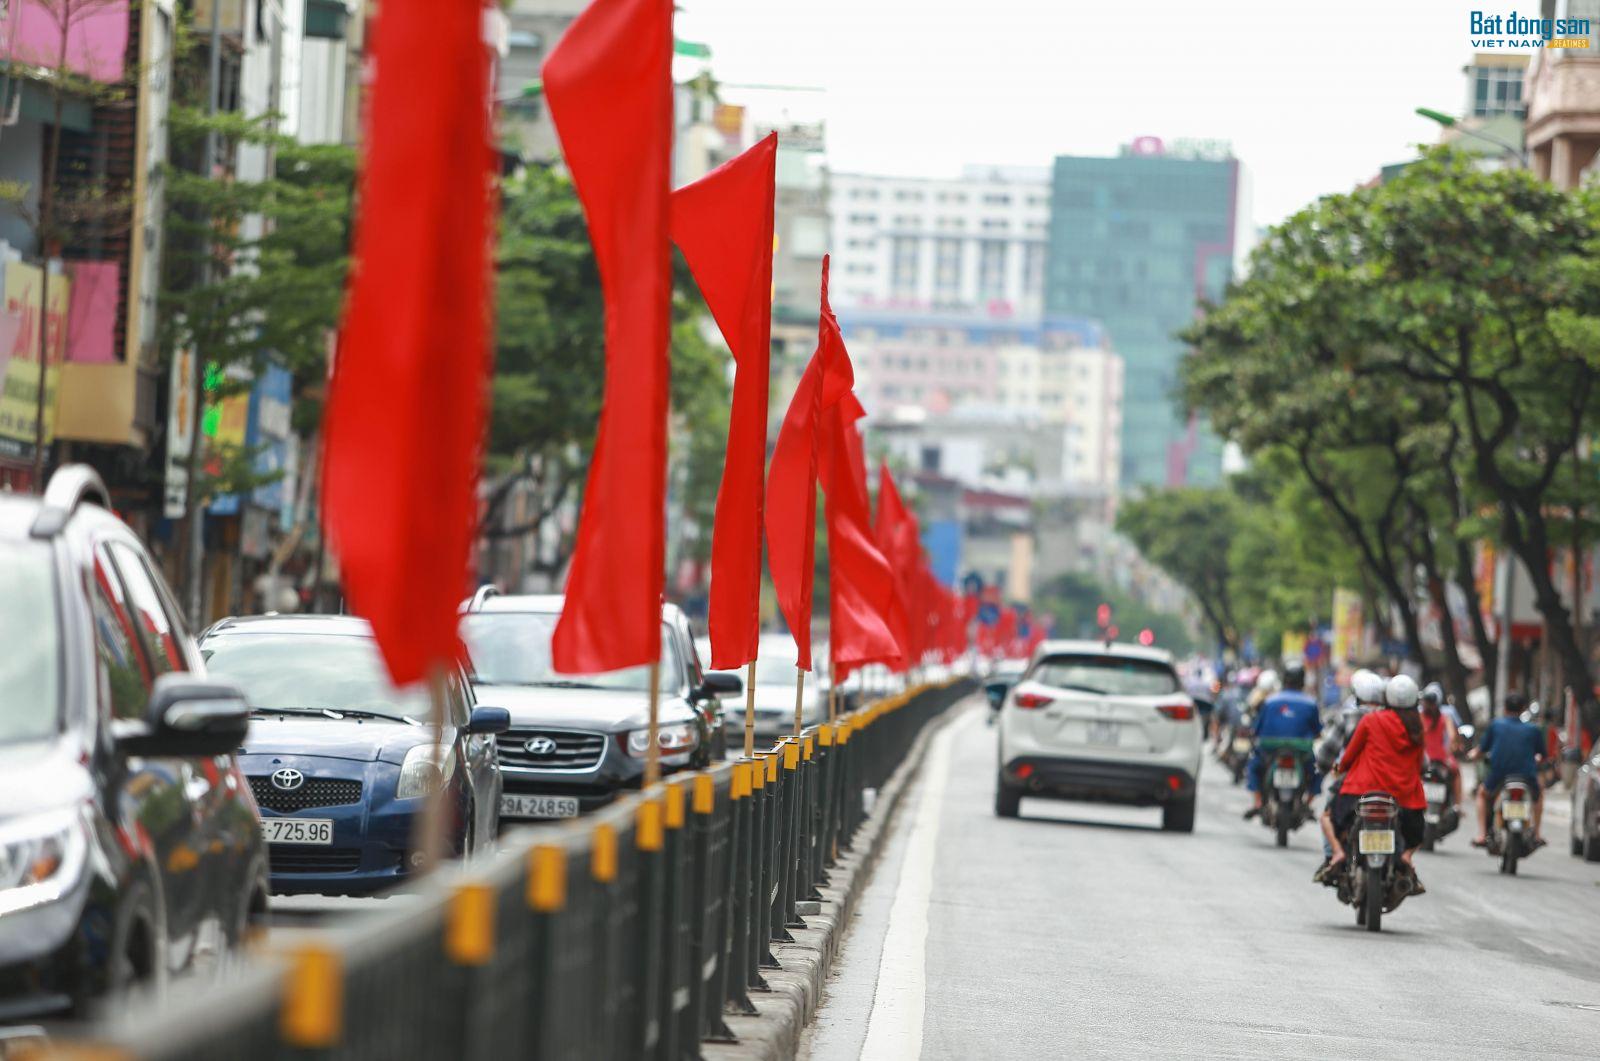 Đoạn đường Tôn Đức Thắng, Nguyễn Lương Bằng, Tây Sơn cờ đỏ được treo khắp tuyến đường